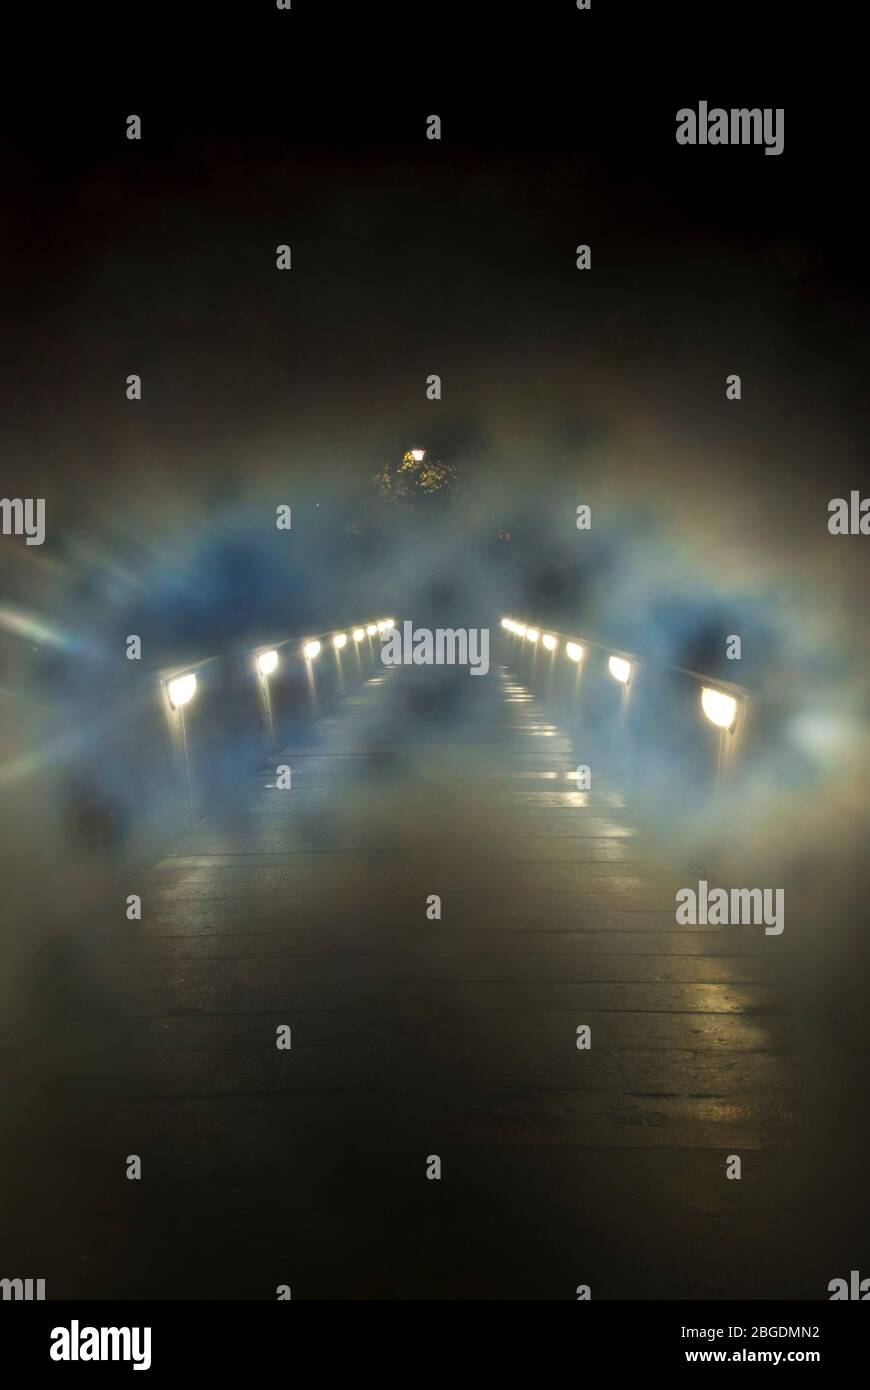 Sentiero in cemento sul ponte preso di notte in condizioni nebbie e nebbie con luci del ponte basse e riflessioni sul percorso che conduce all'oscurità Foto Stock